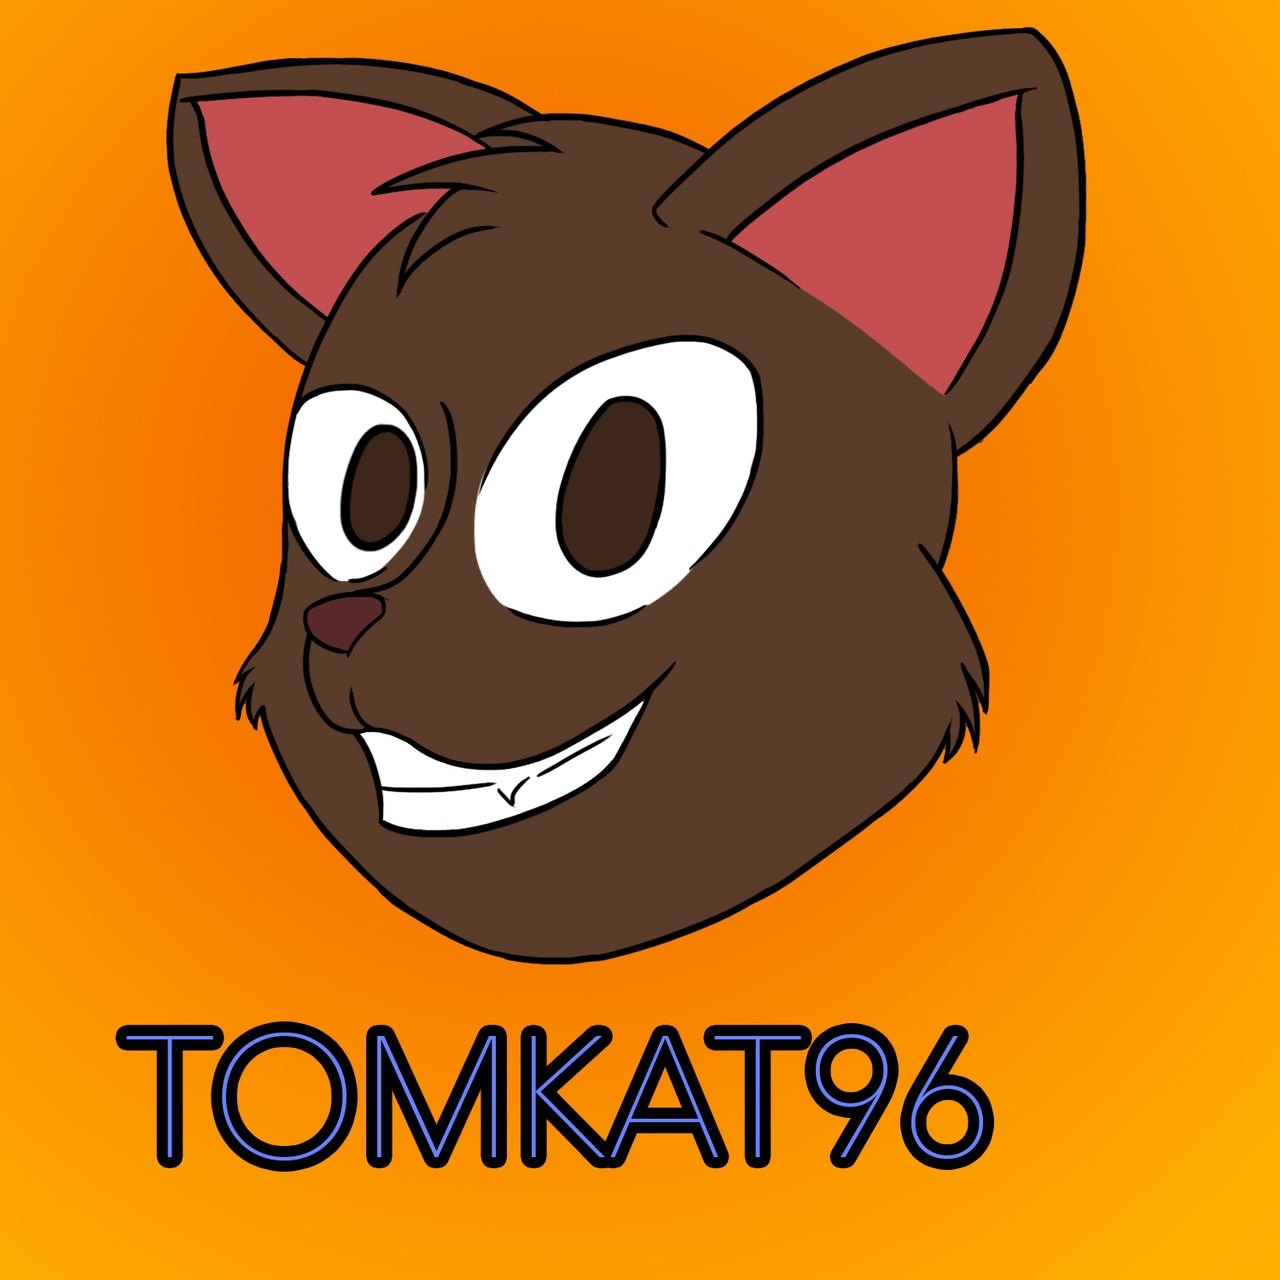 ARTIST Tomkat96 17